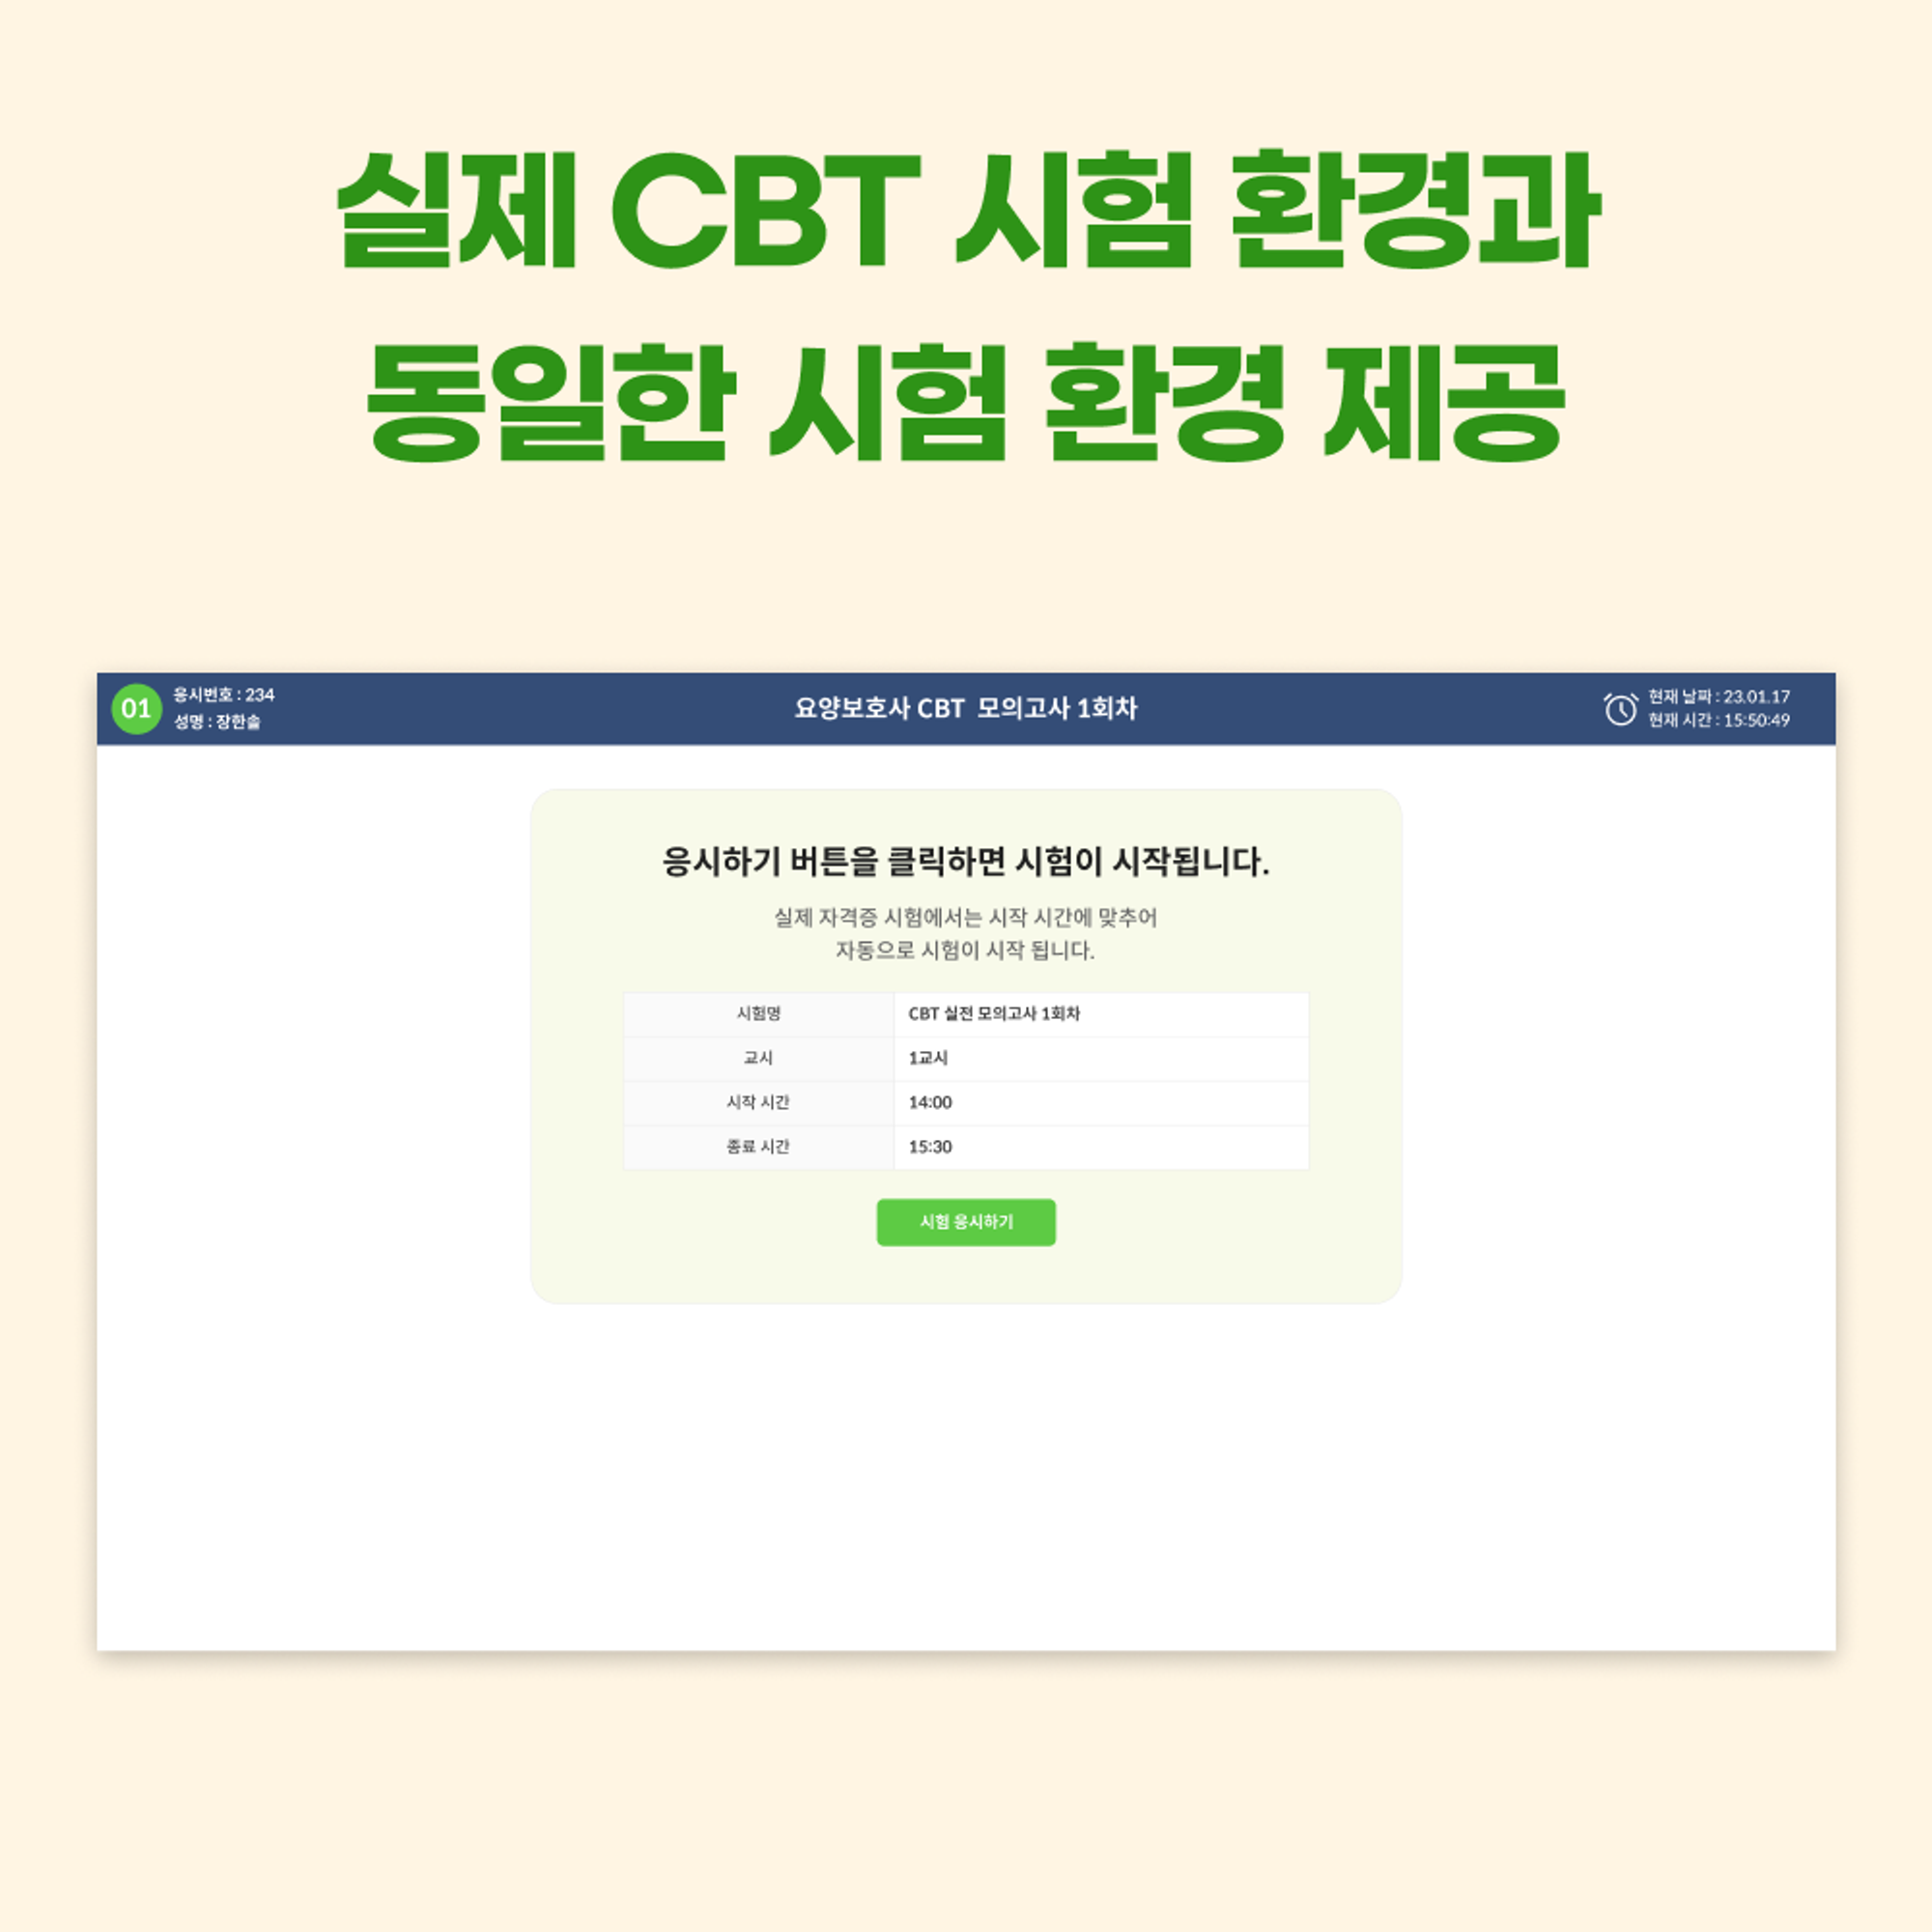 <케어파트너 CBT 소개 1>